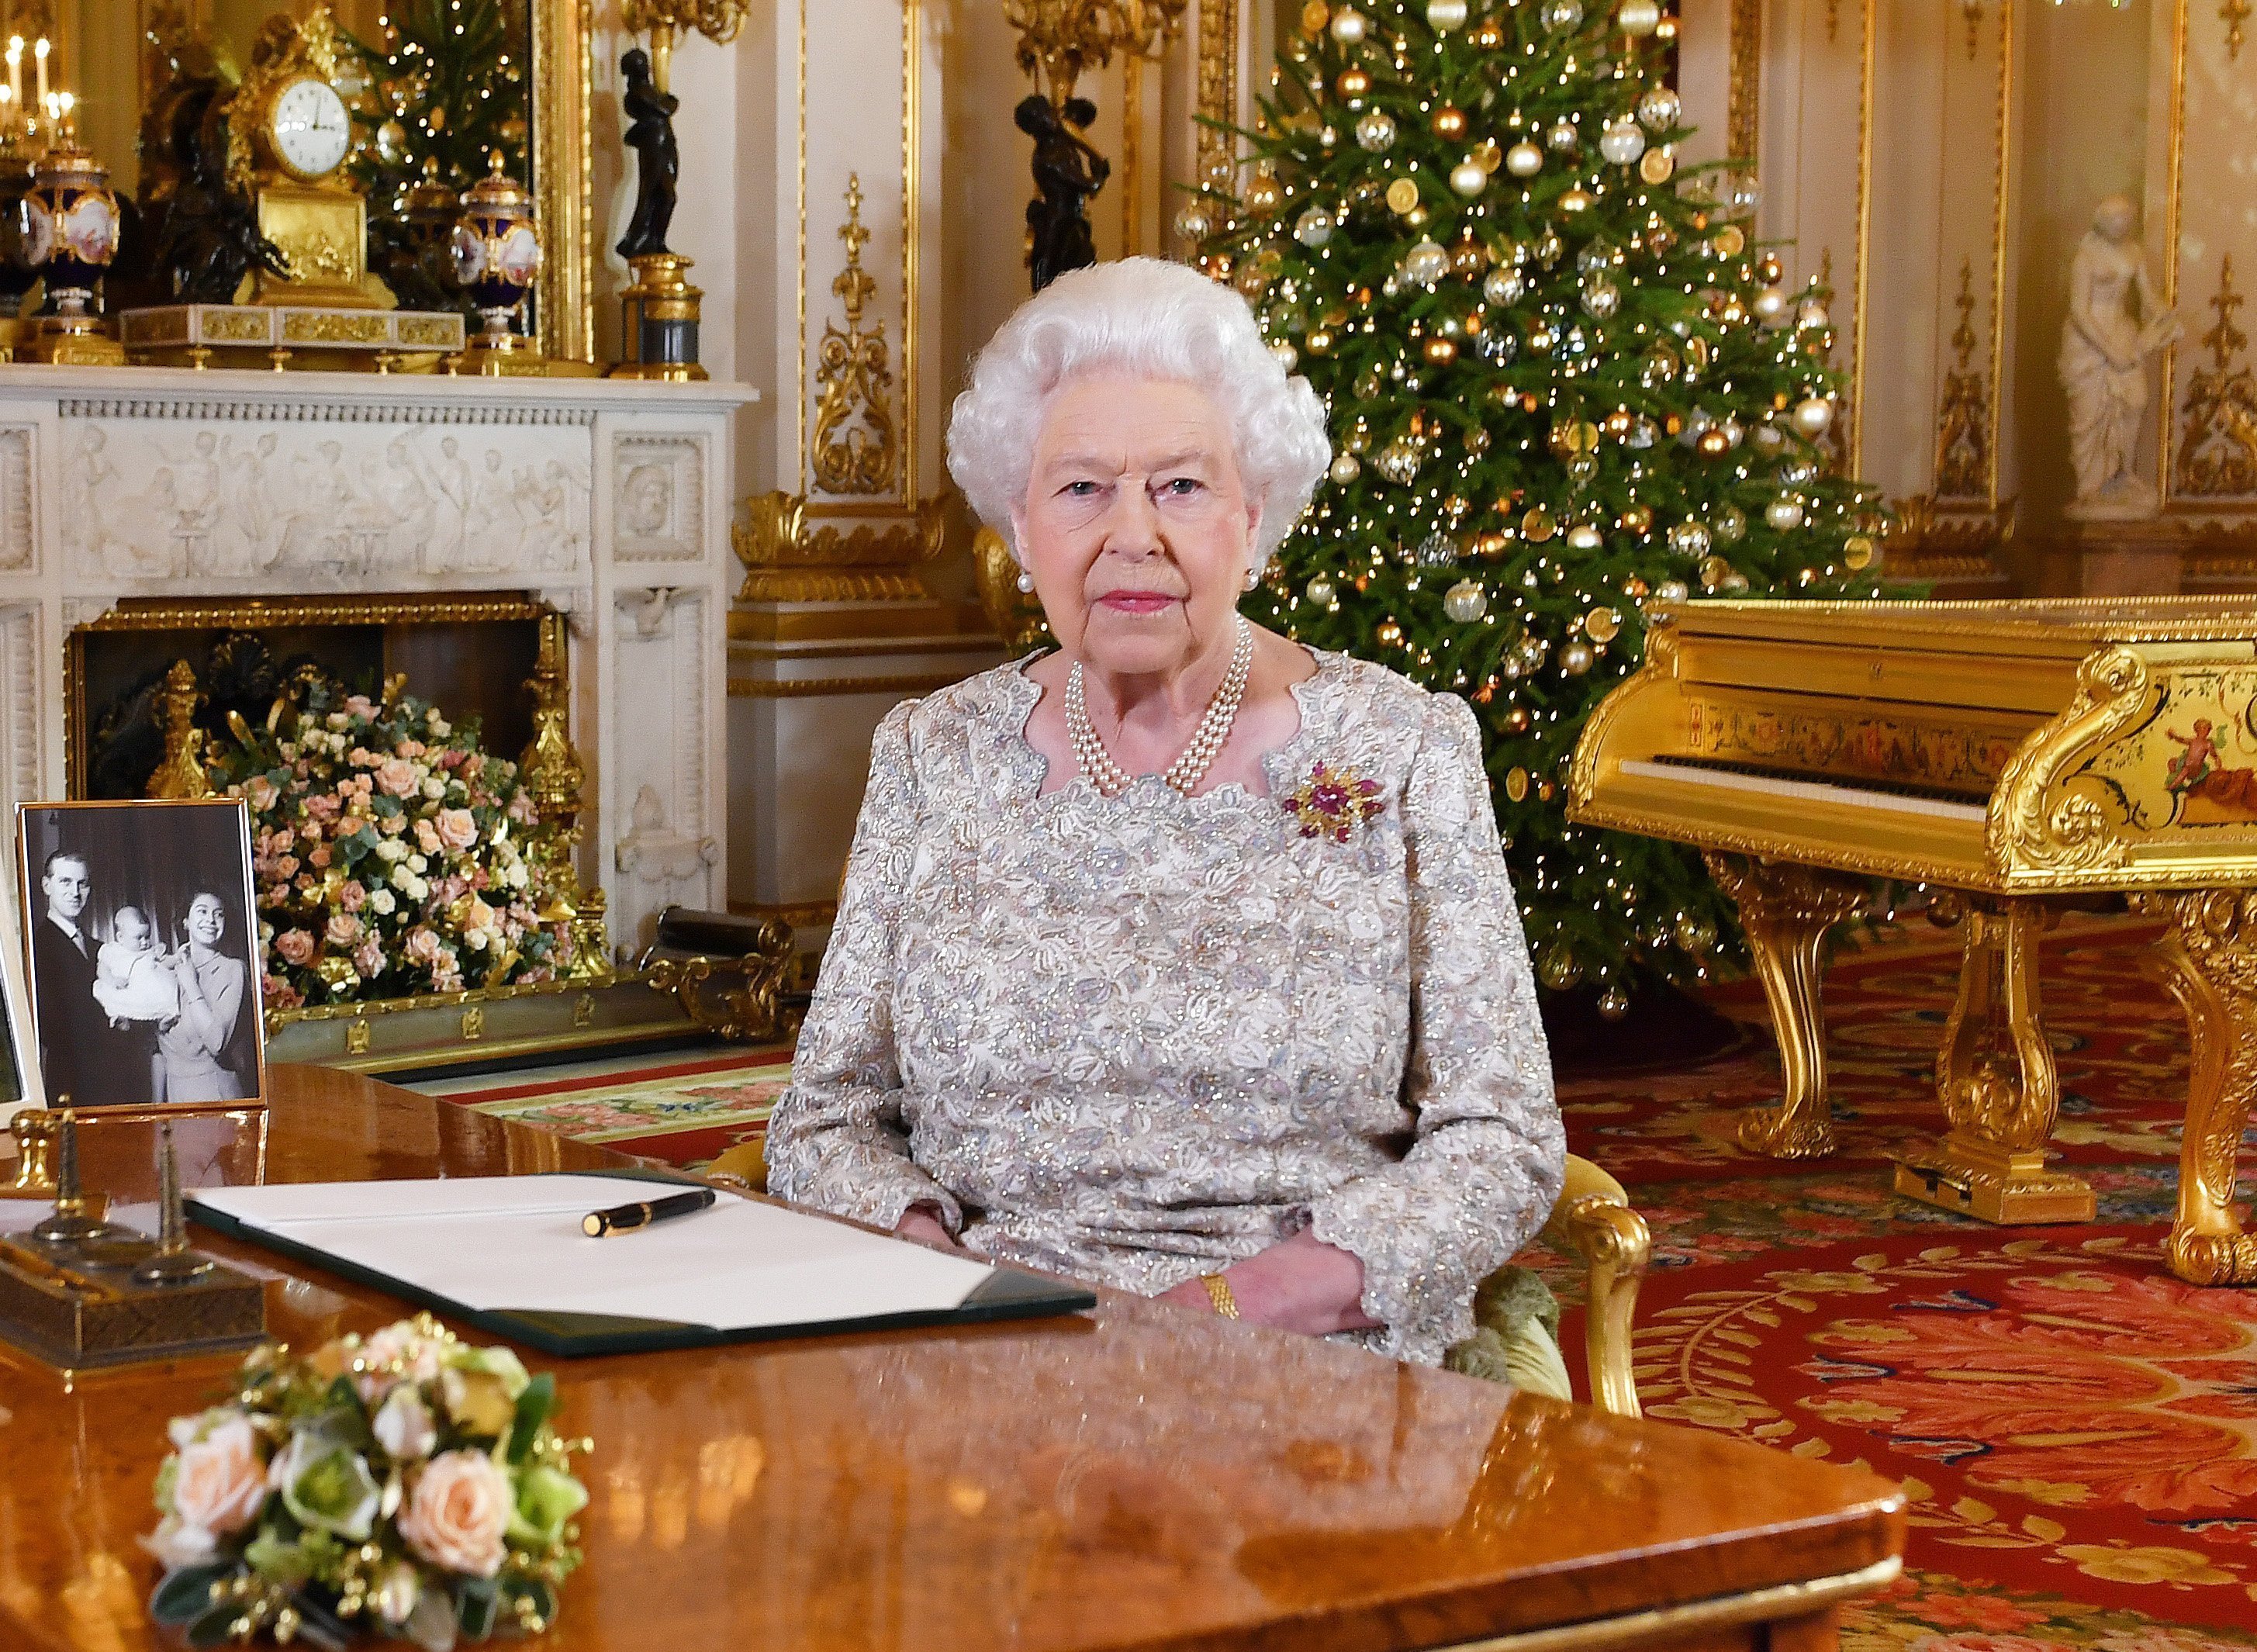 La reine Elizabeth II pose pour une photo après avoir enregistré son message annuel de Noël, dans le White Drawing Room de Buckingham Palace dans une photo publiée le 24 décembre 2018 à Londres. | Photo : Getty Images